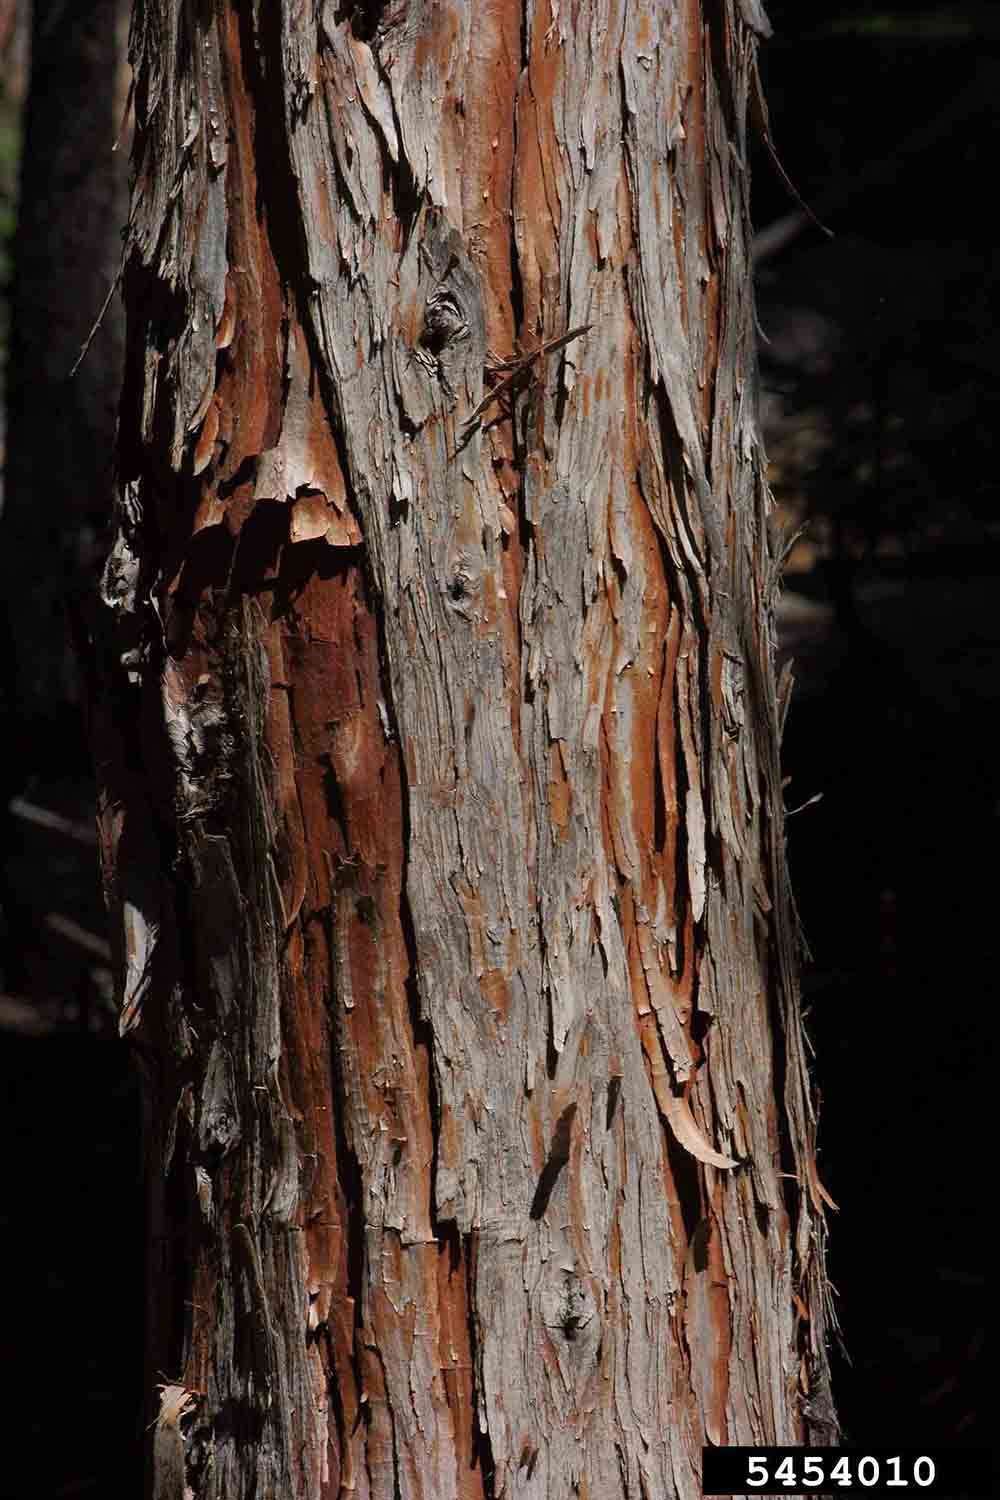 Incense cedar bark on trunk